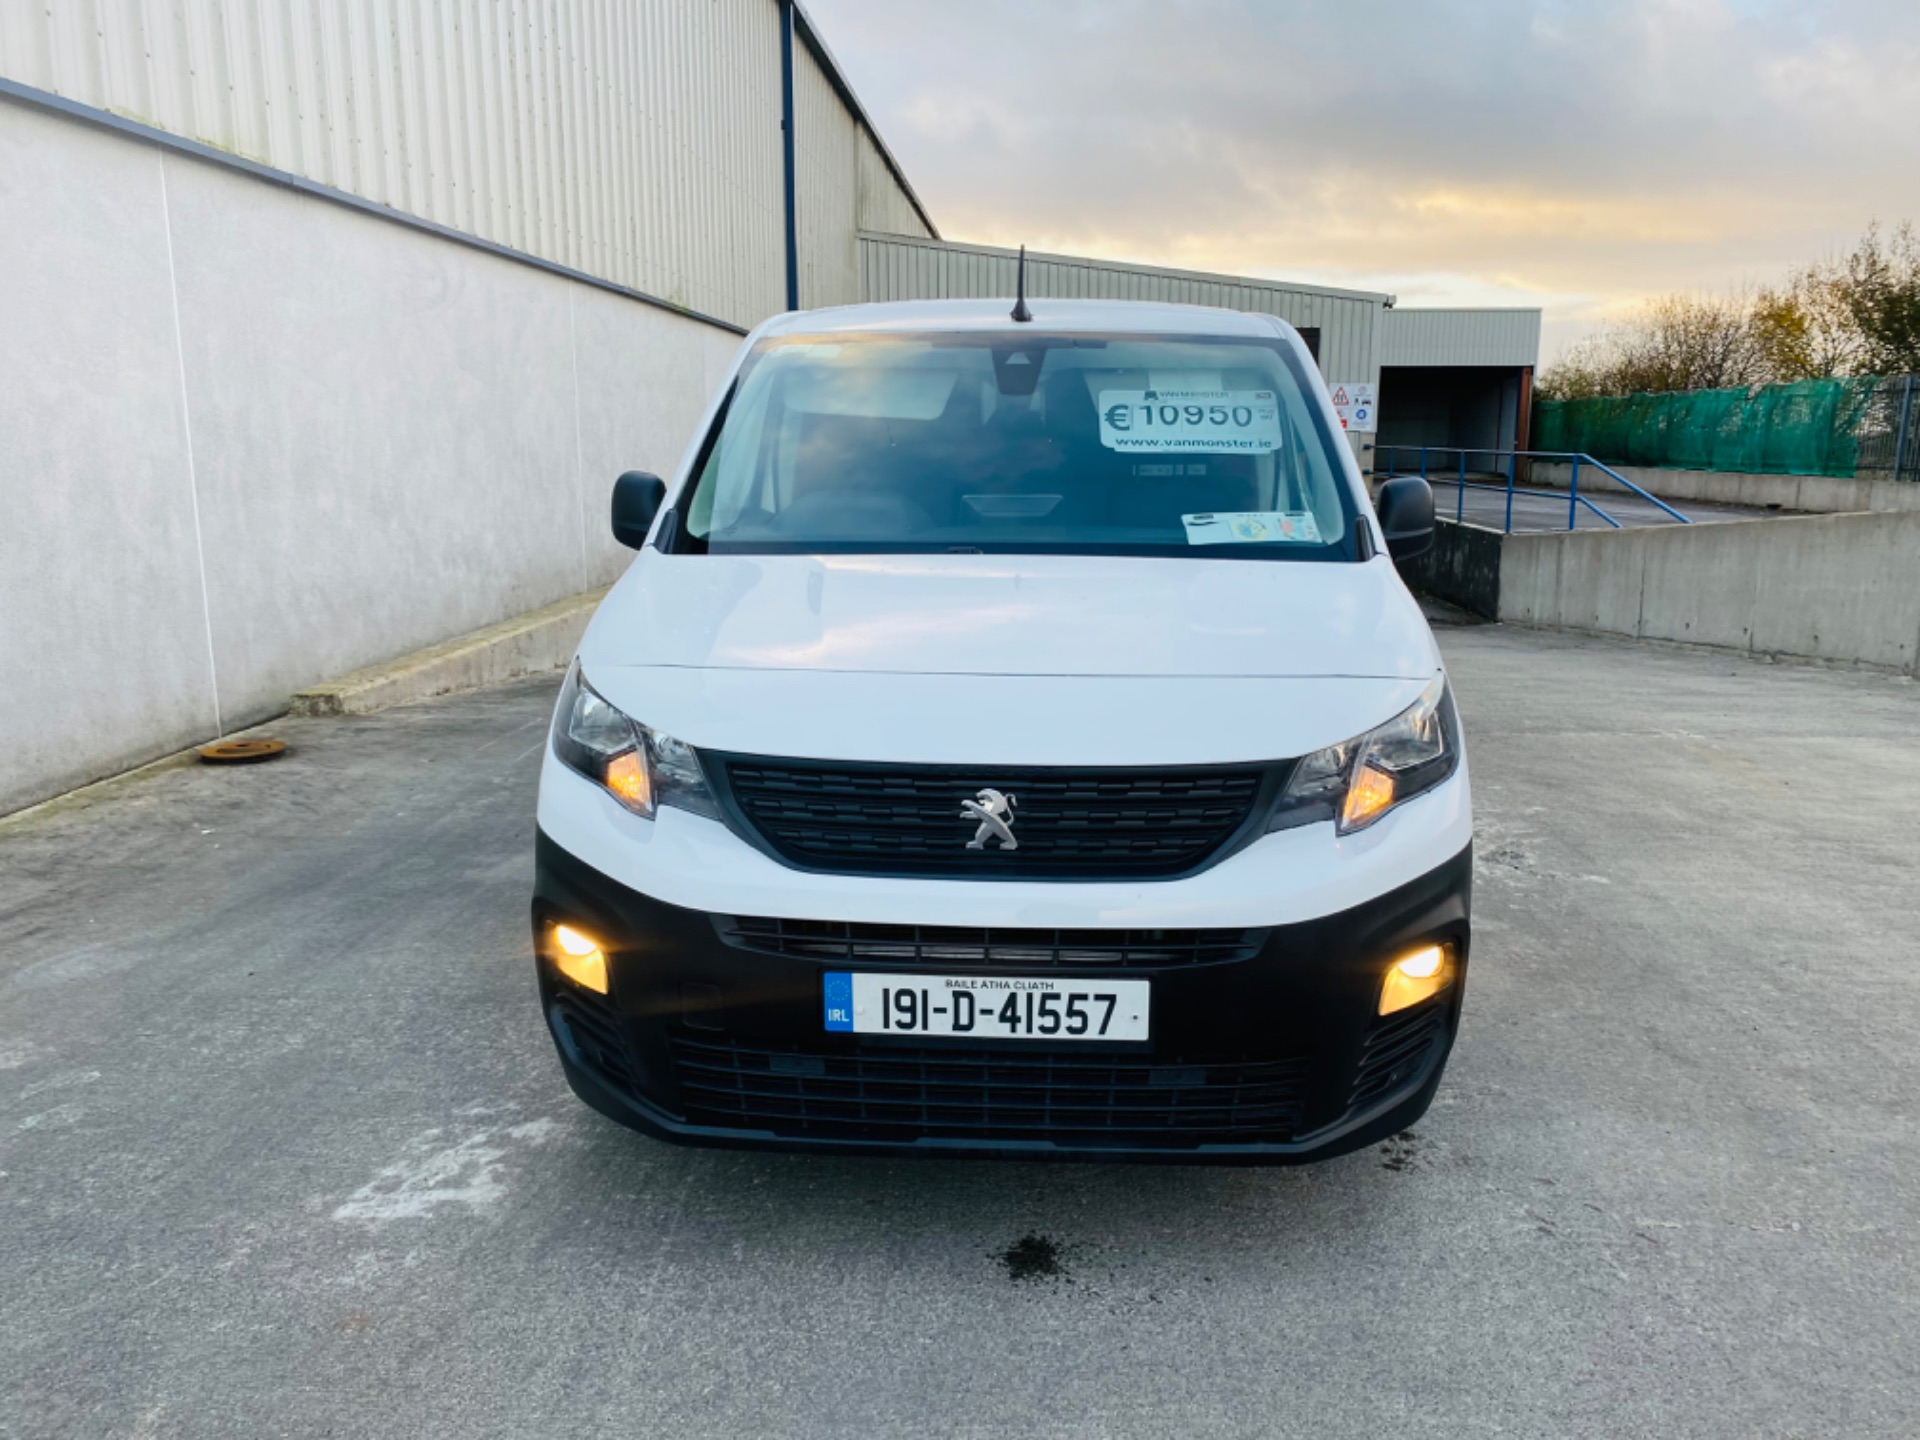 2019 Peugeot Partner Prof Plus 1.6hdi 100 1000KG 2D (191D41557) Thumbnail 2